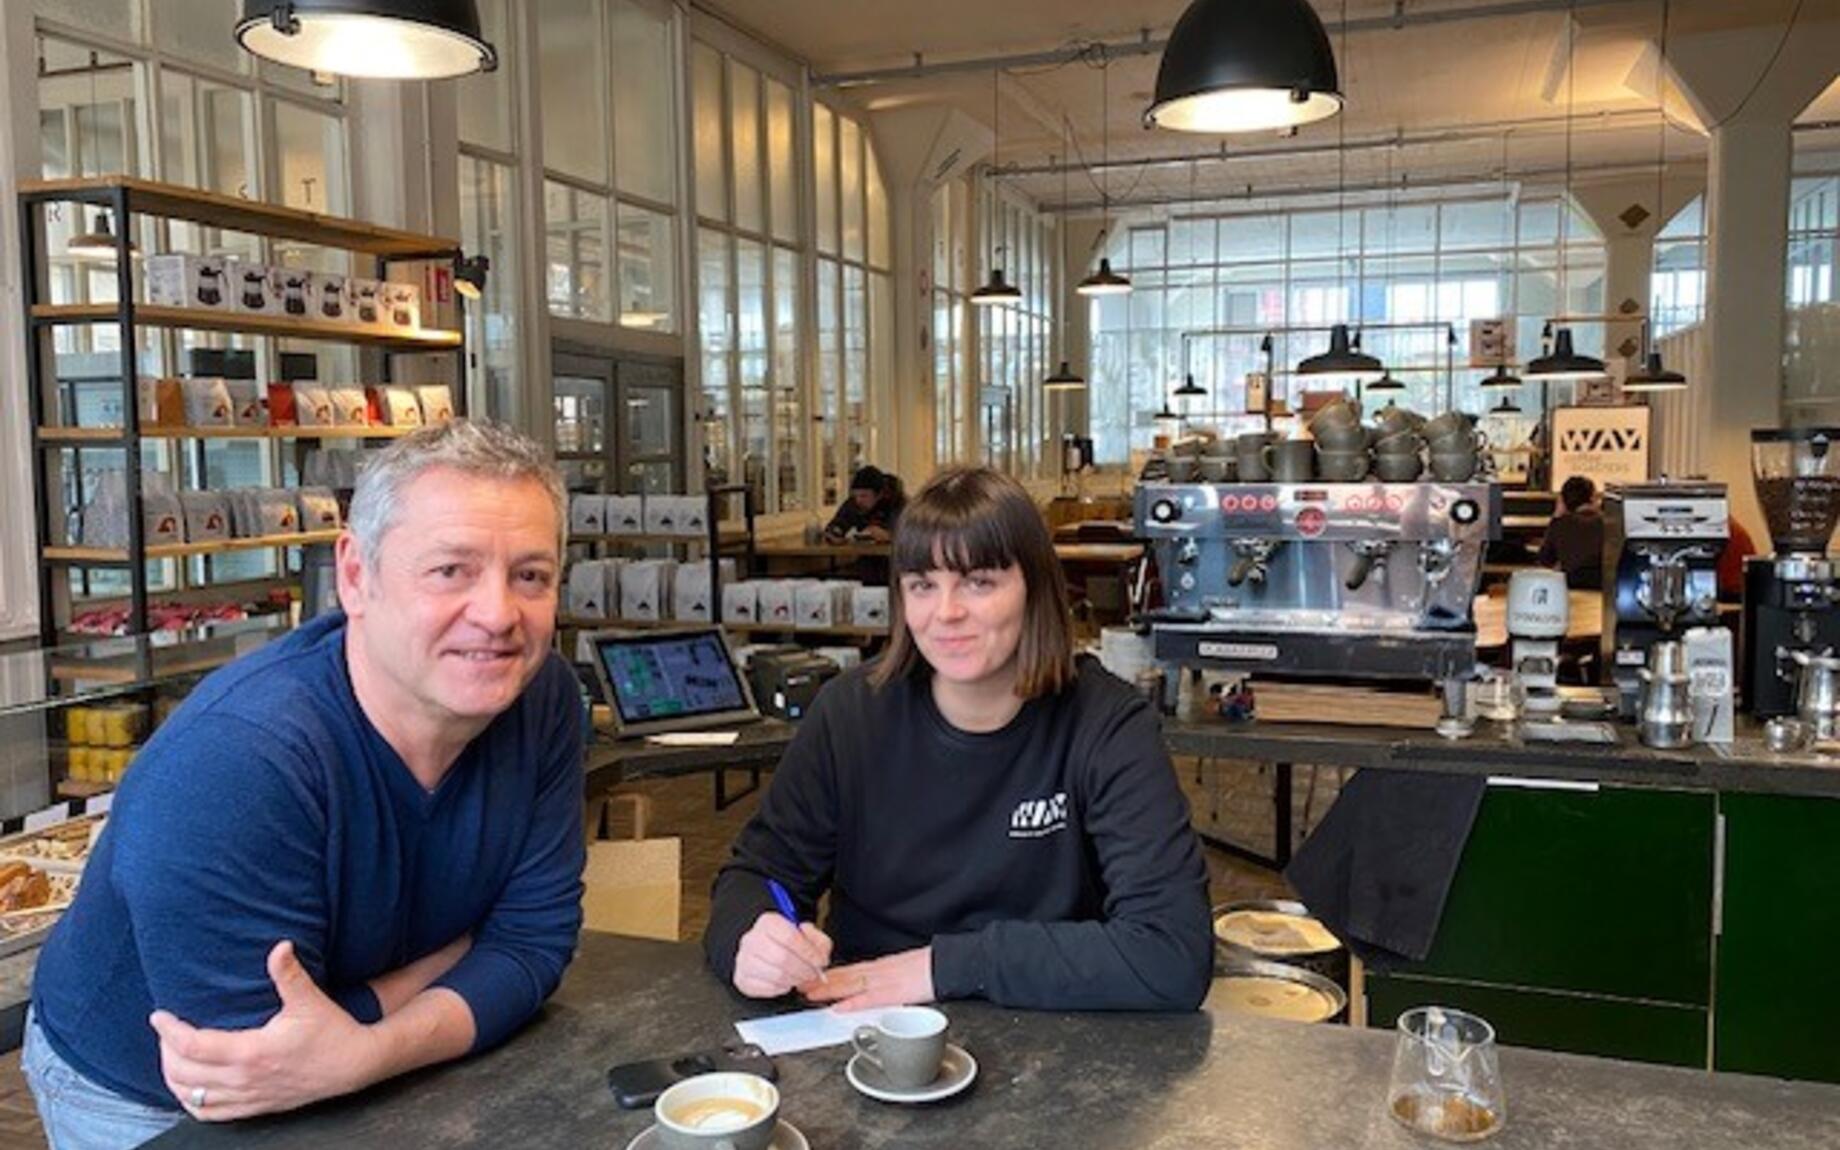 Charlene en Luk gingen samen in zee als businesspartners en runnen sinds 2017 WAY, een koffiebedrijf in Gent met grootste plannen